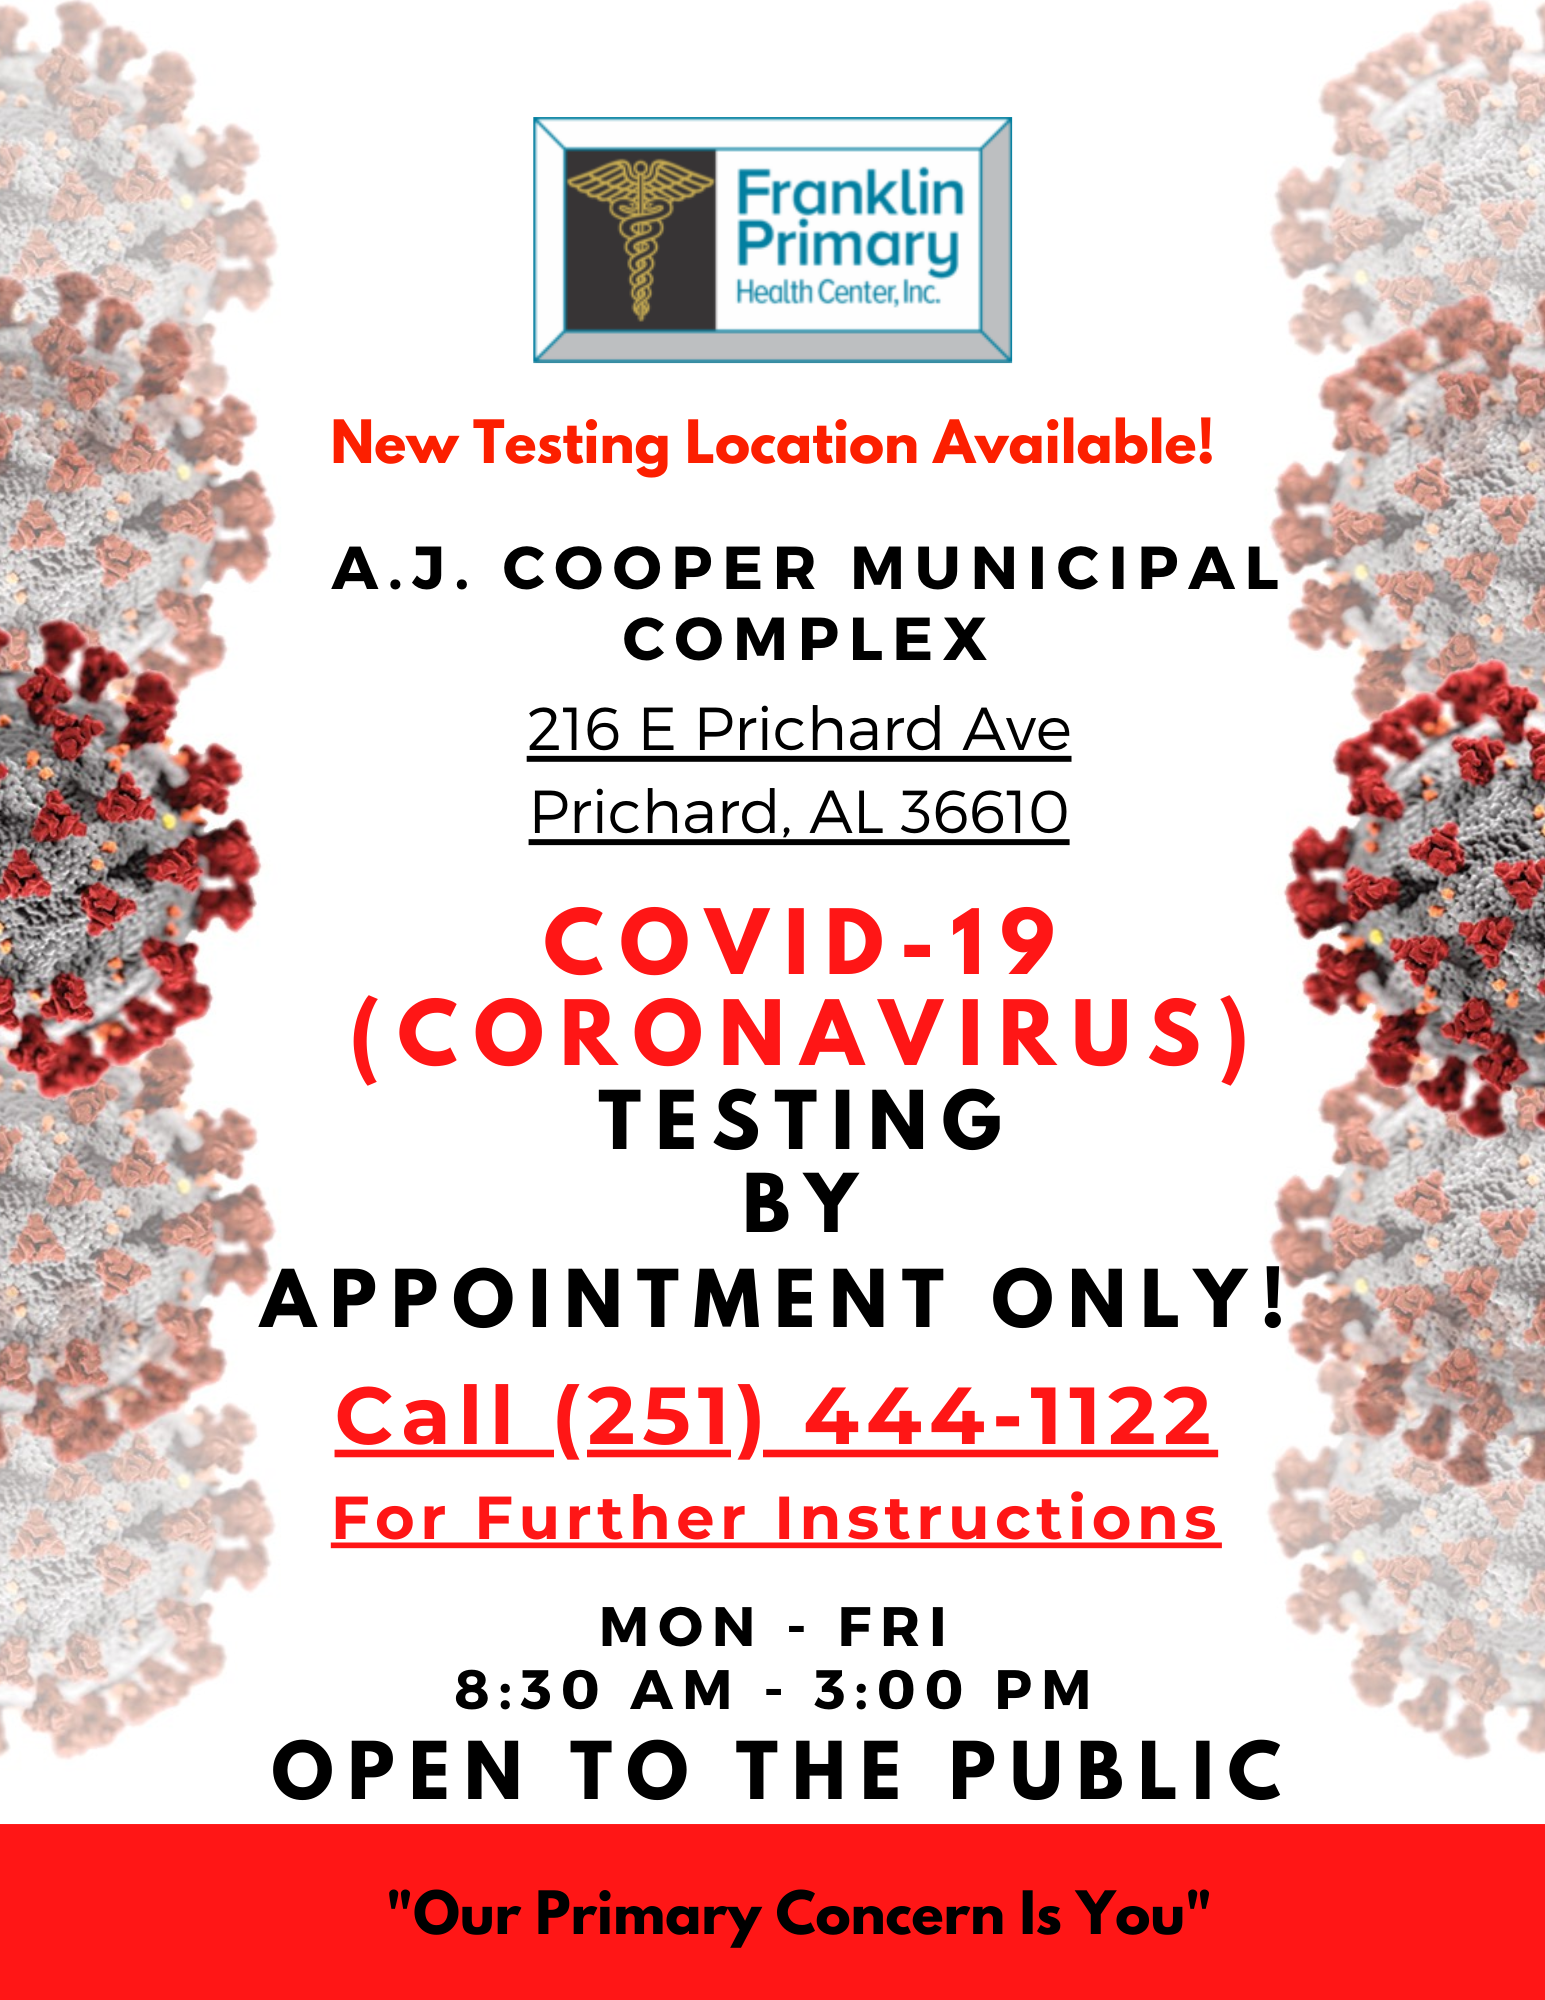 Covid-19 Franklin Primary Health Center Inc